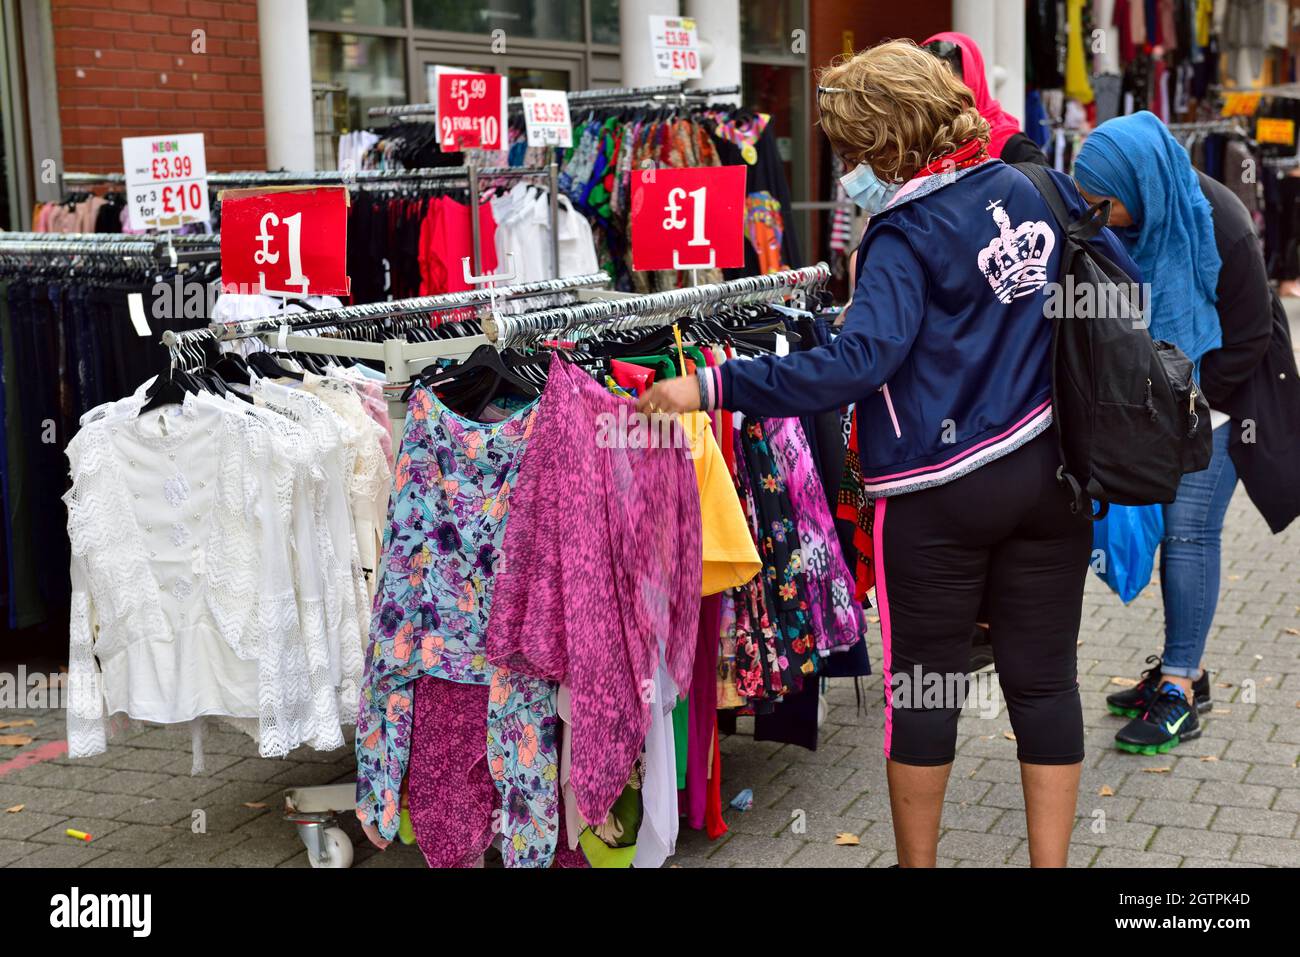 Les acheteurs à la recherche de vêtements au Birmingham Bullring Rag Market, Royaume-Uni Banque D'Images